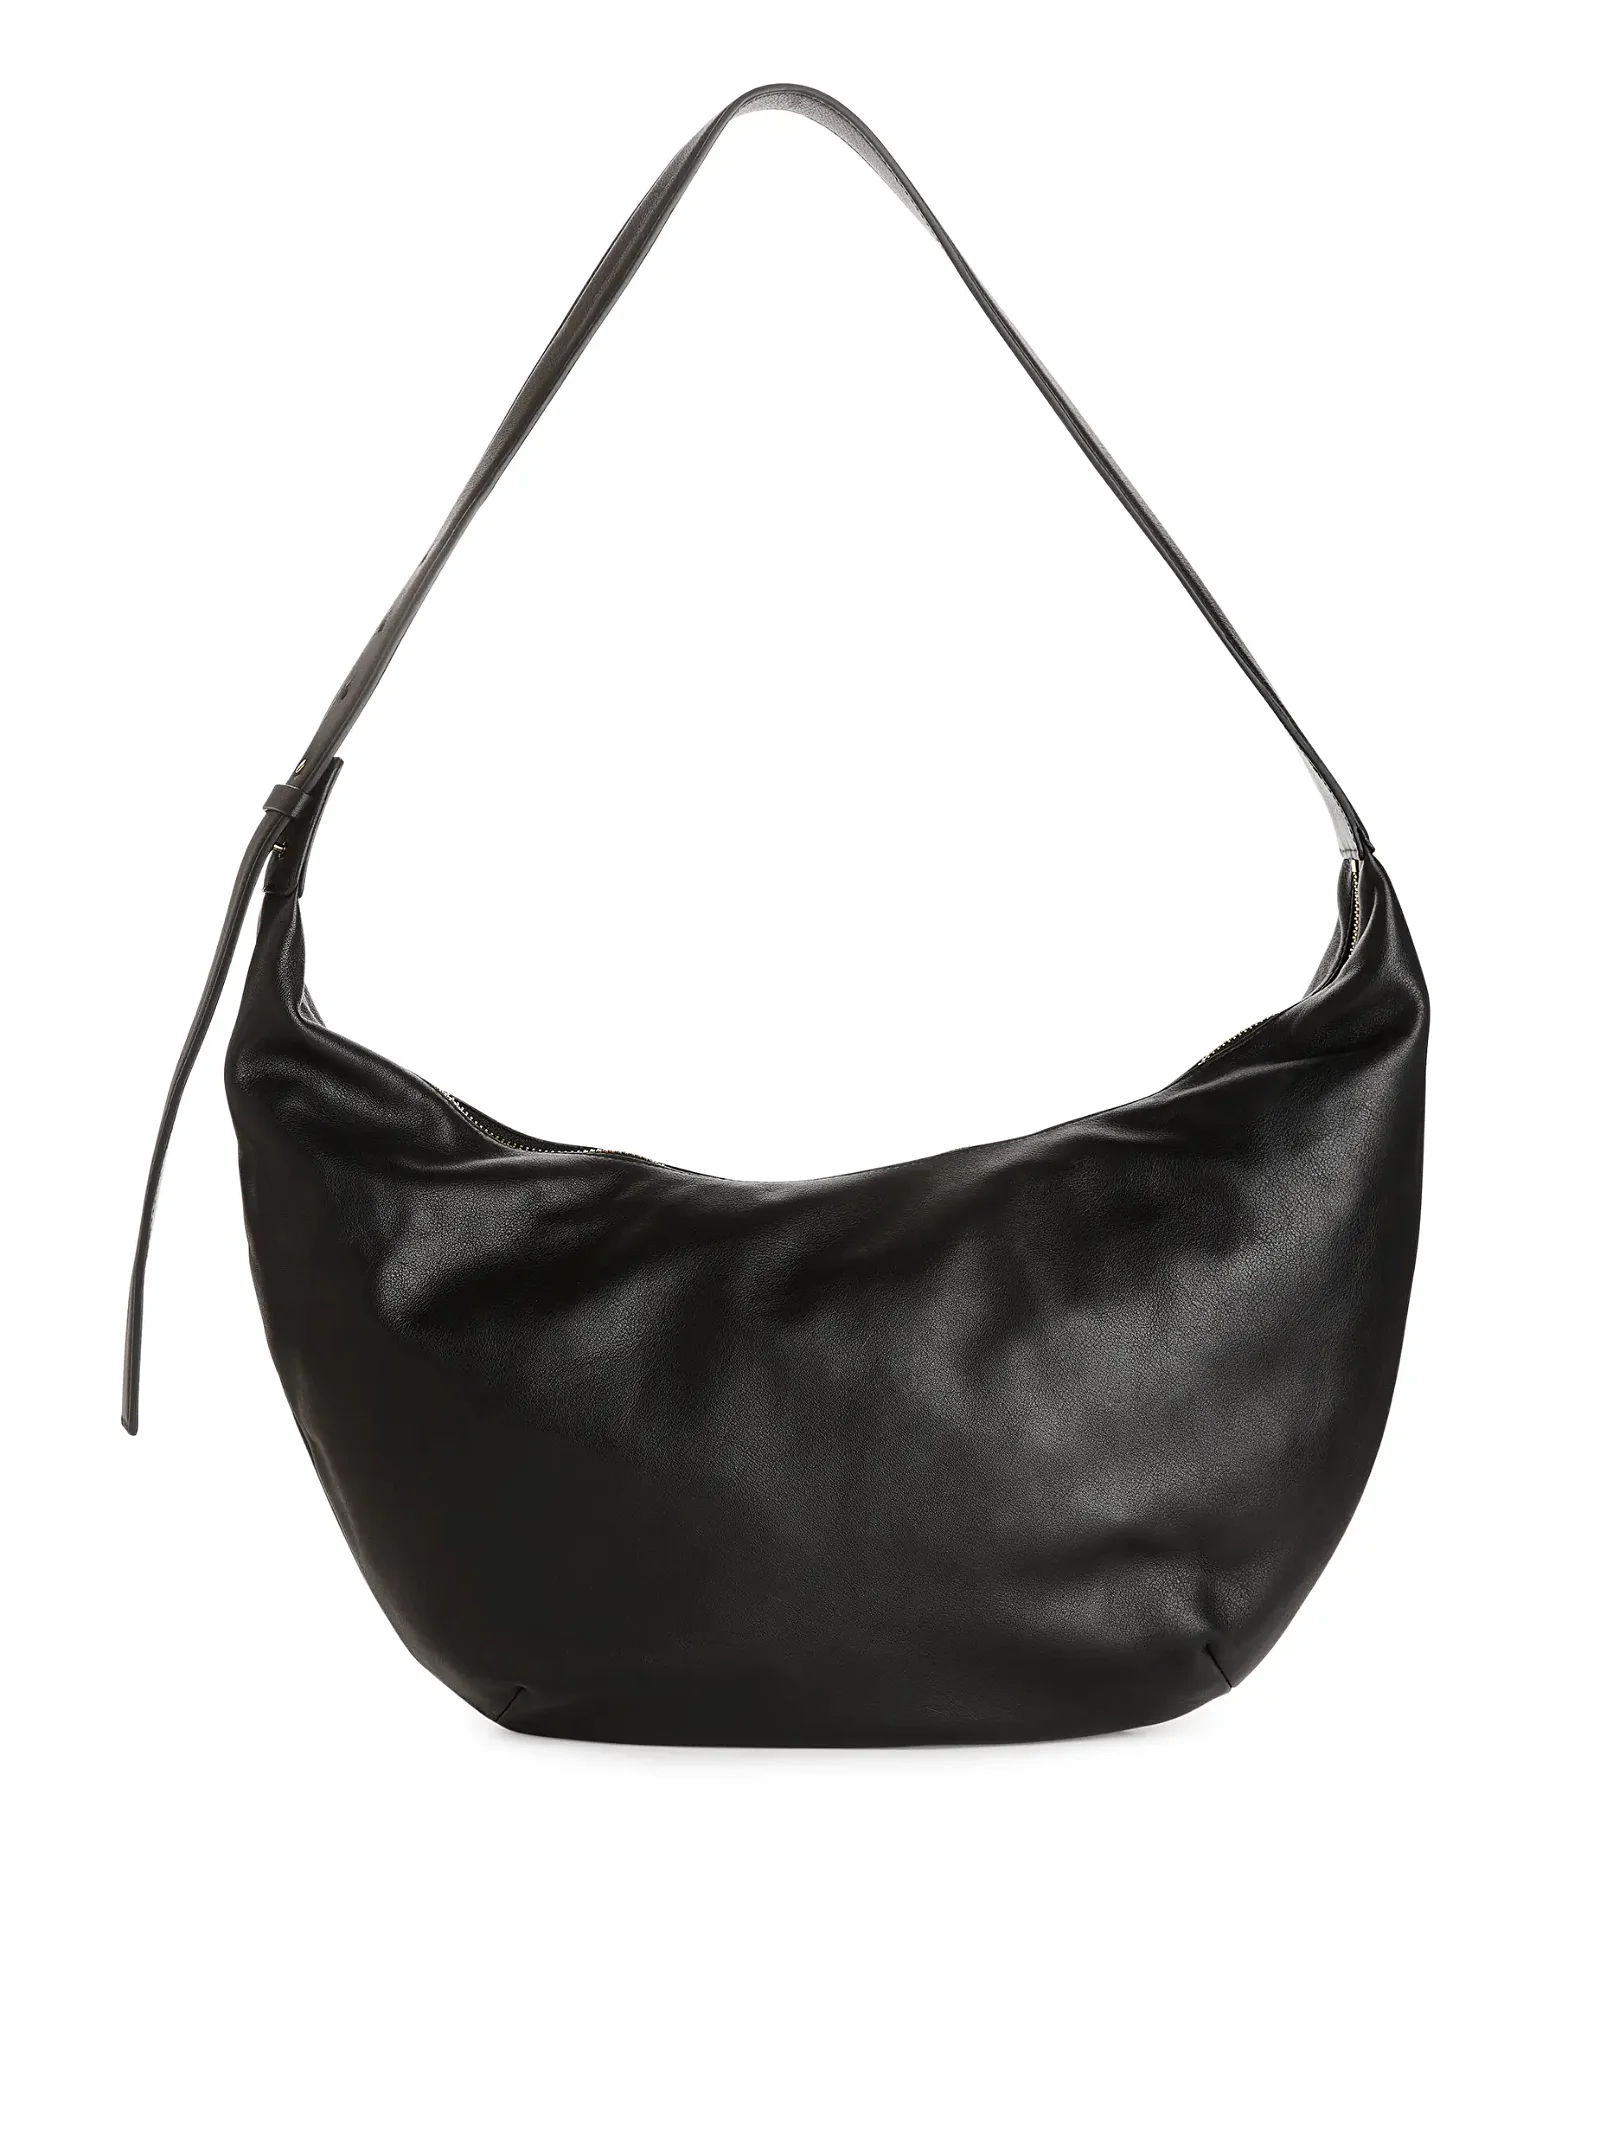 Curved Leather Bag - Black - ARKET